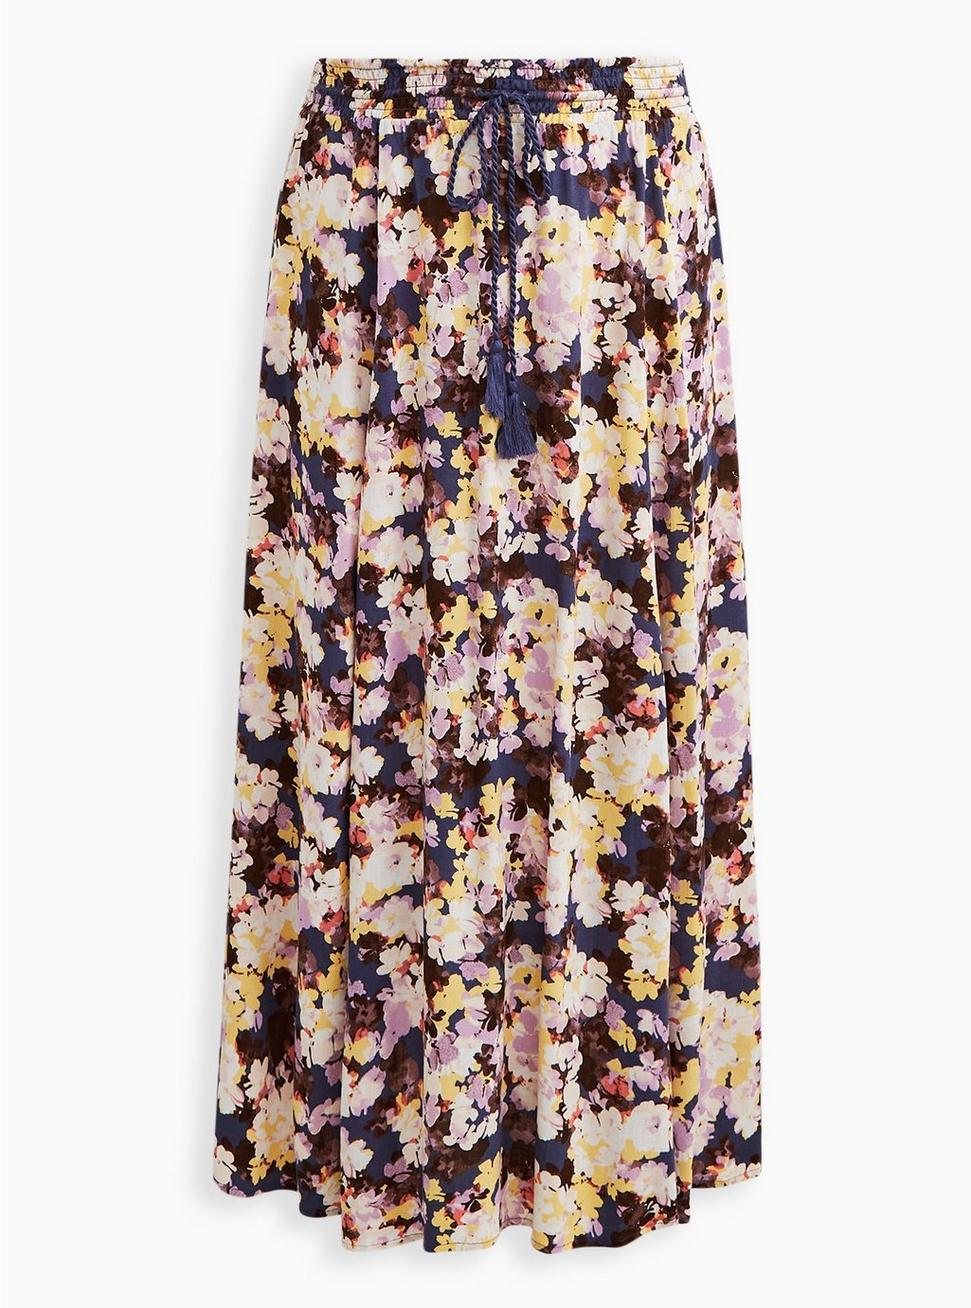 Slit Maxi Skirt - Floral Multi , FLORAL MULTI, hi-res